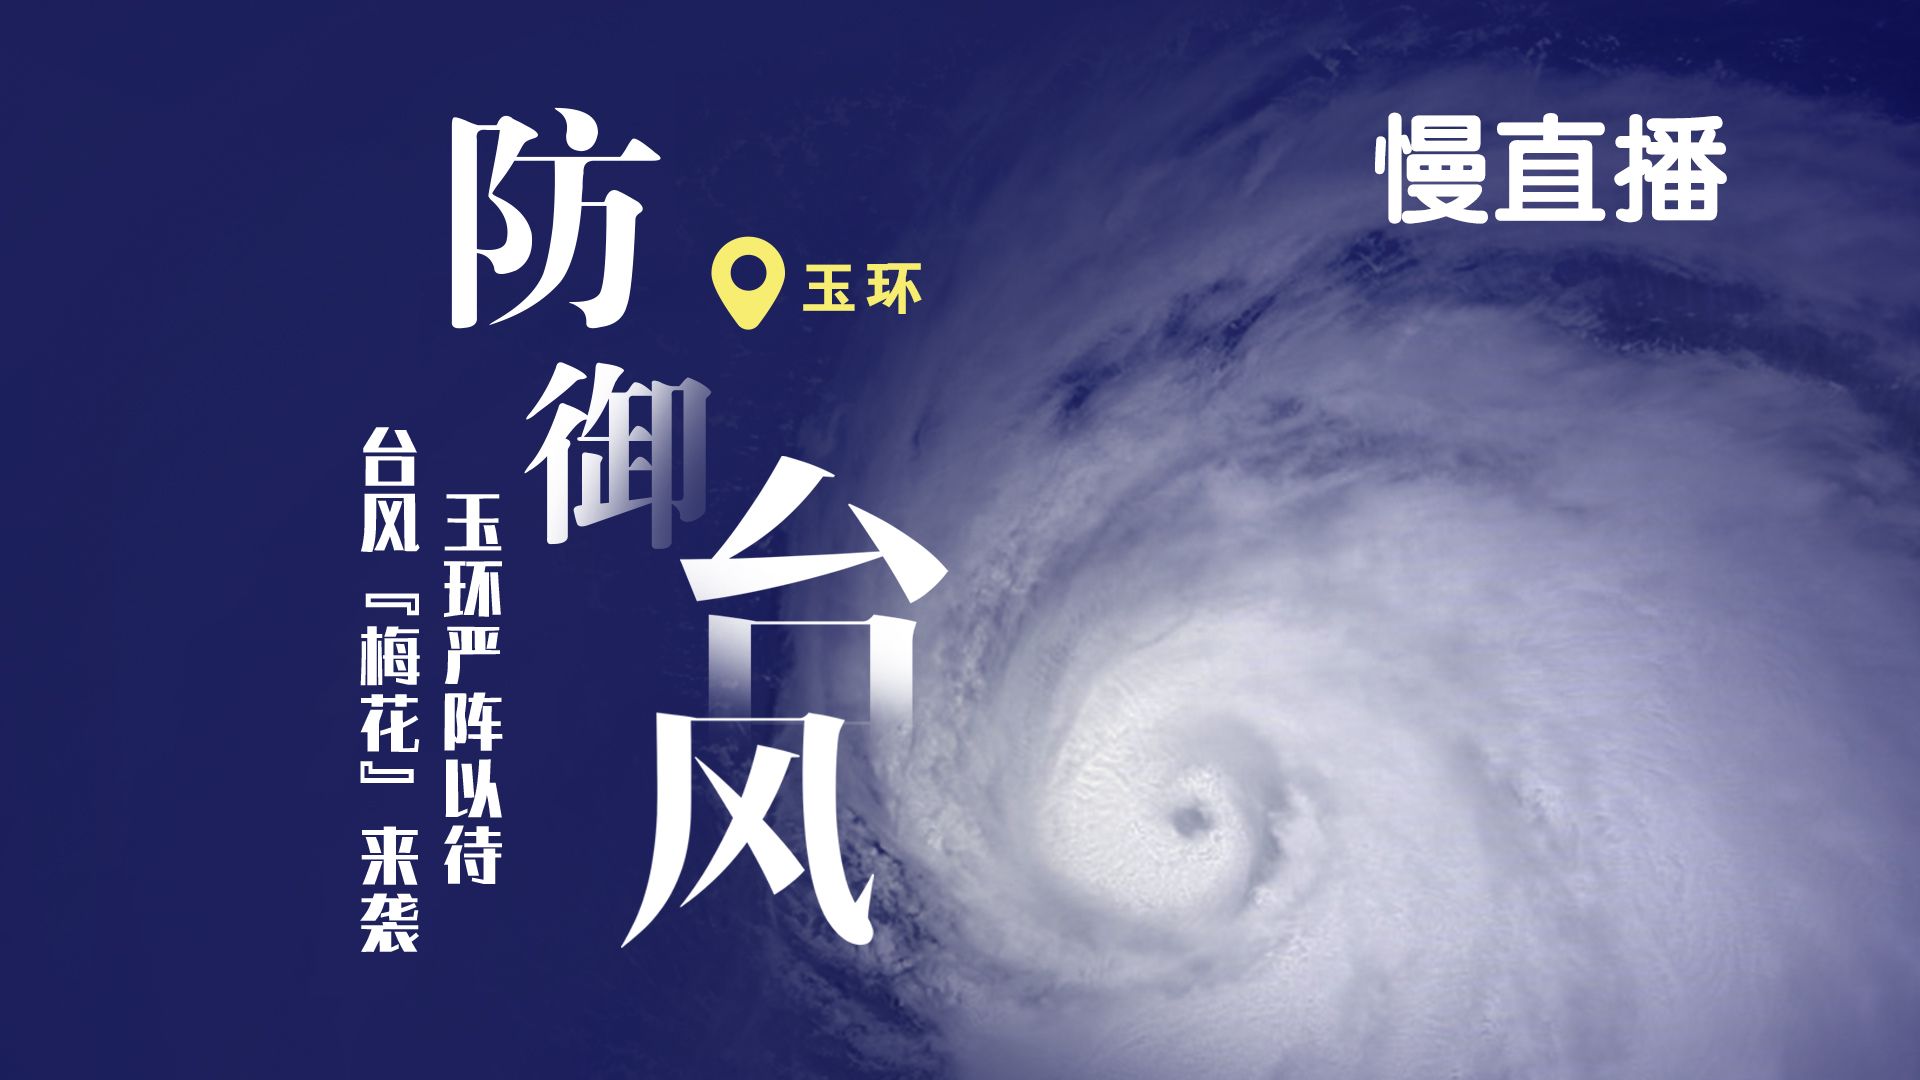 超强台风“利奇马”丨近中心最大风力17级！看9号台风“利奇马” 9号早上动向